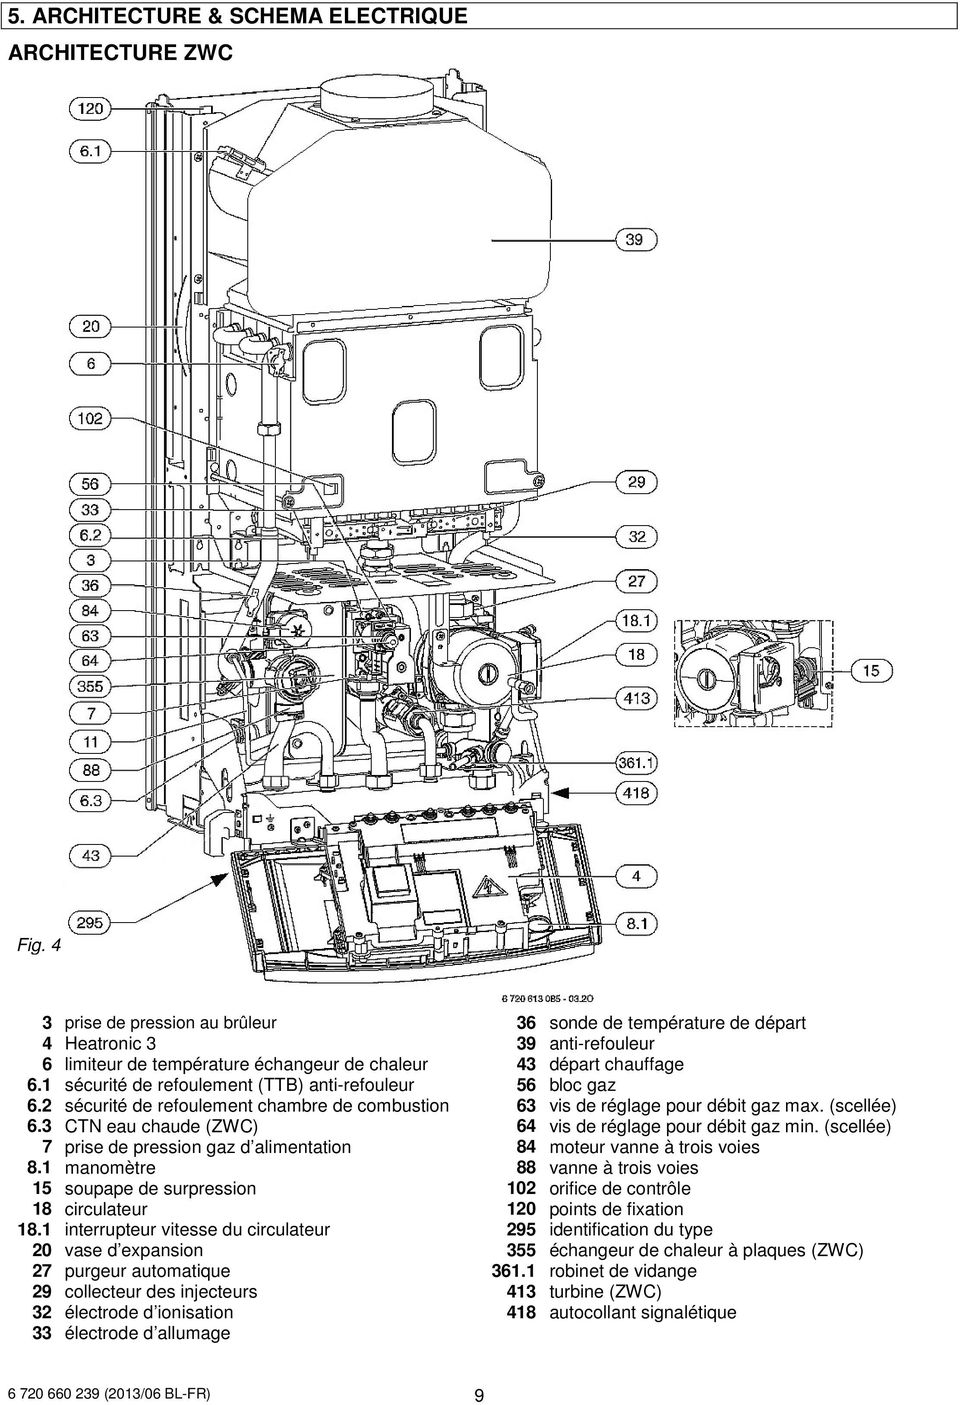 1 sécurité de refoulement (TTB) anti-refouleur 56 bloc gaz 6.2 sécurité de refoulement chambre de combustion 63 vis de réglage pour débit gaz max. (scellée) 6.